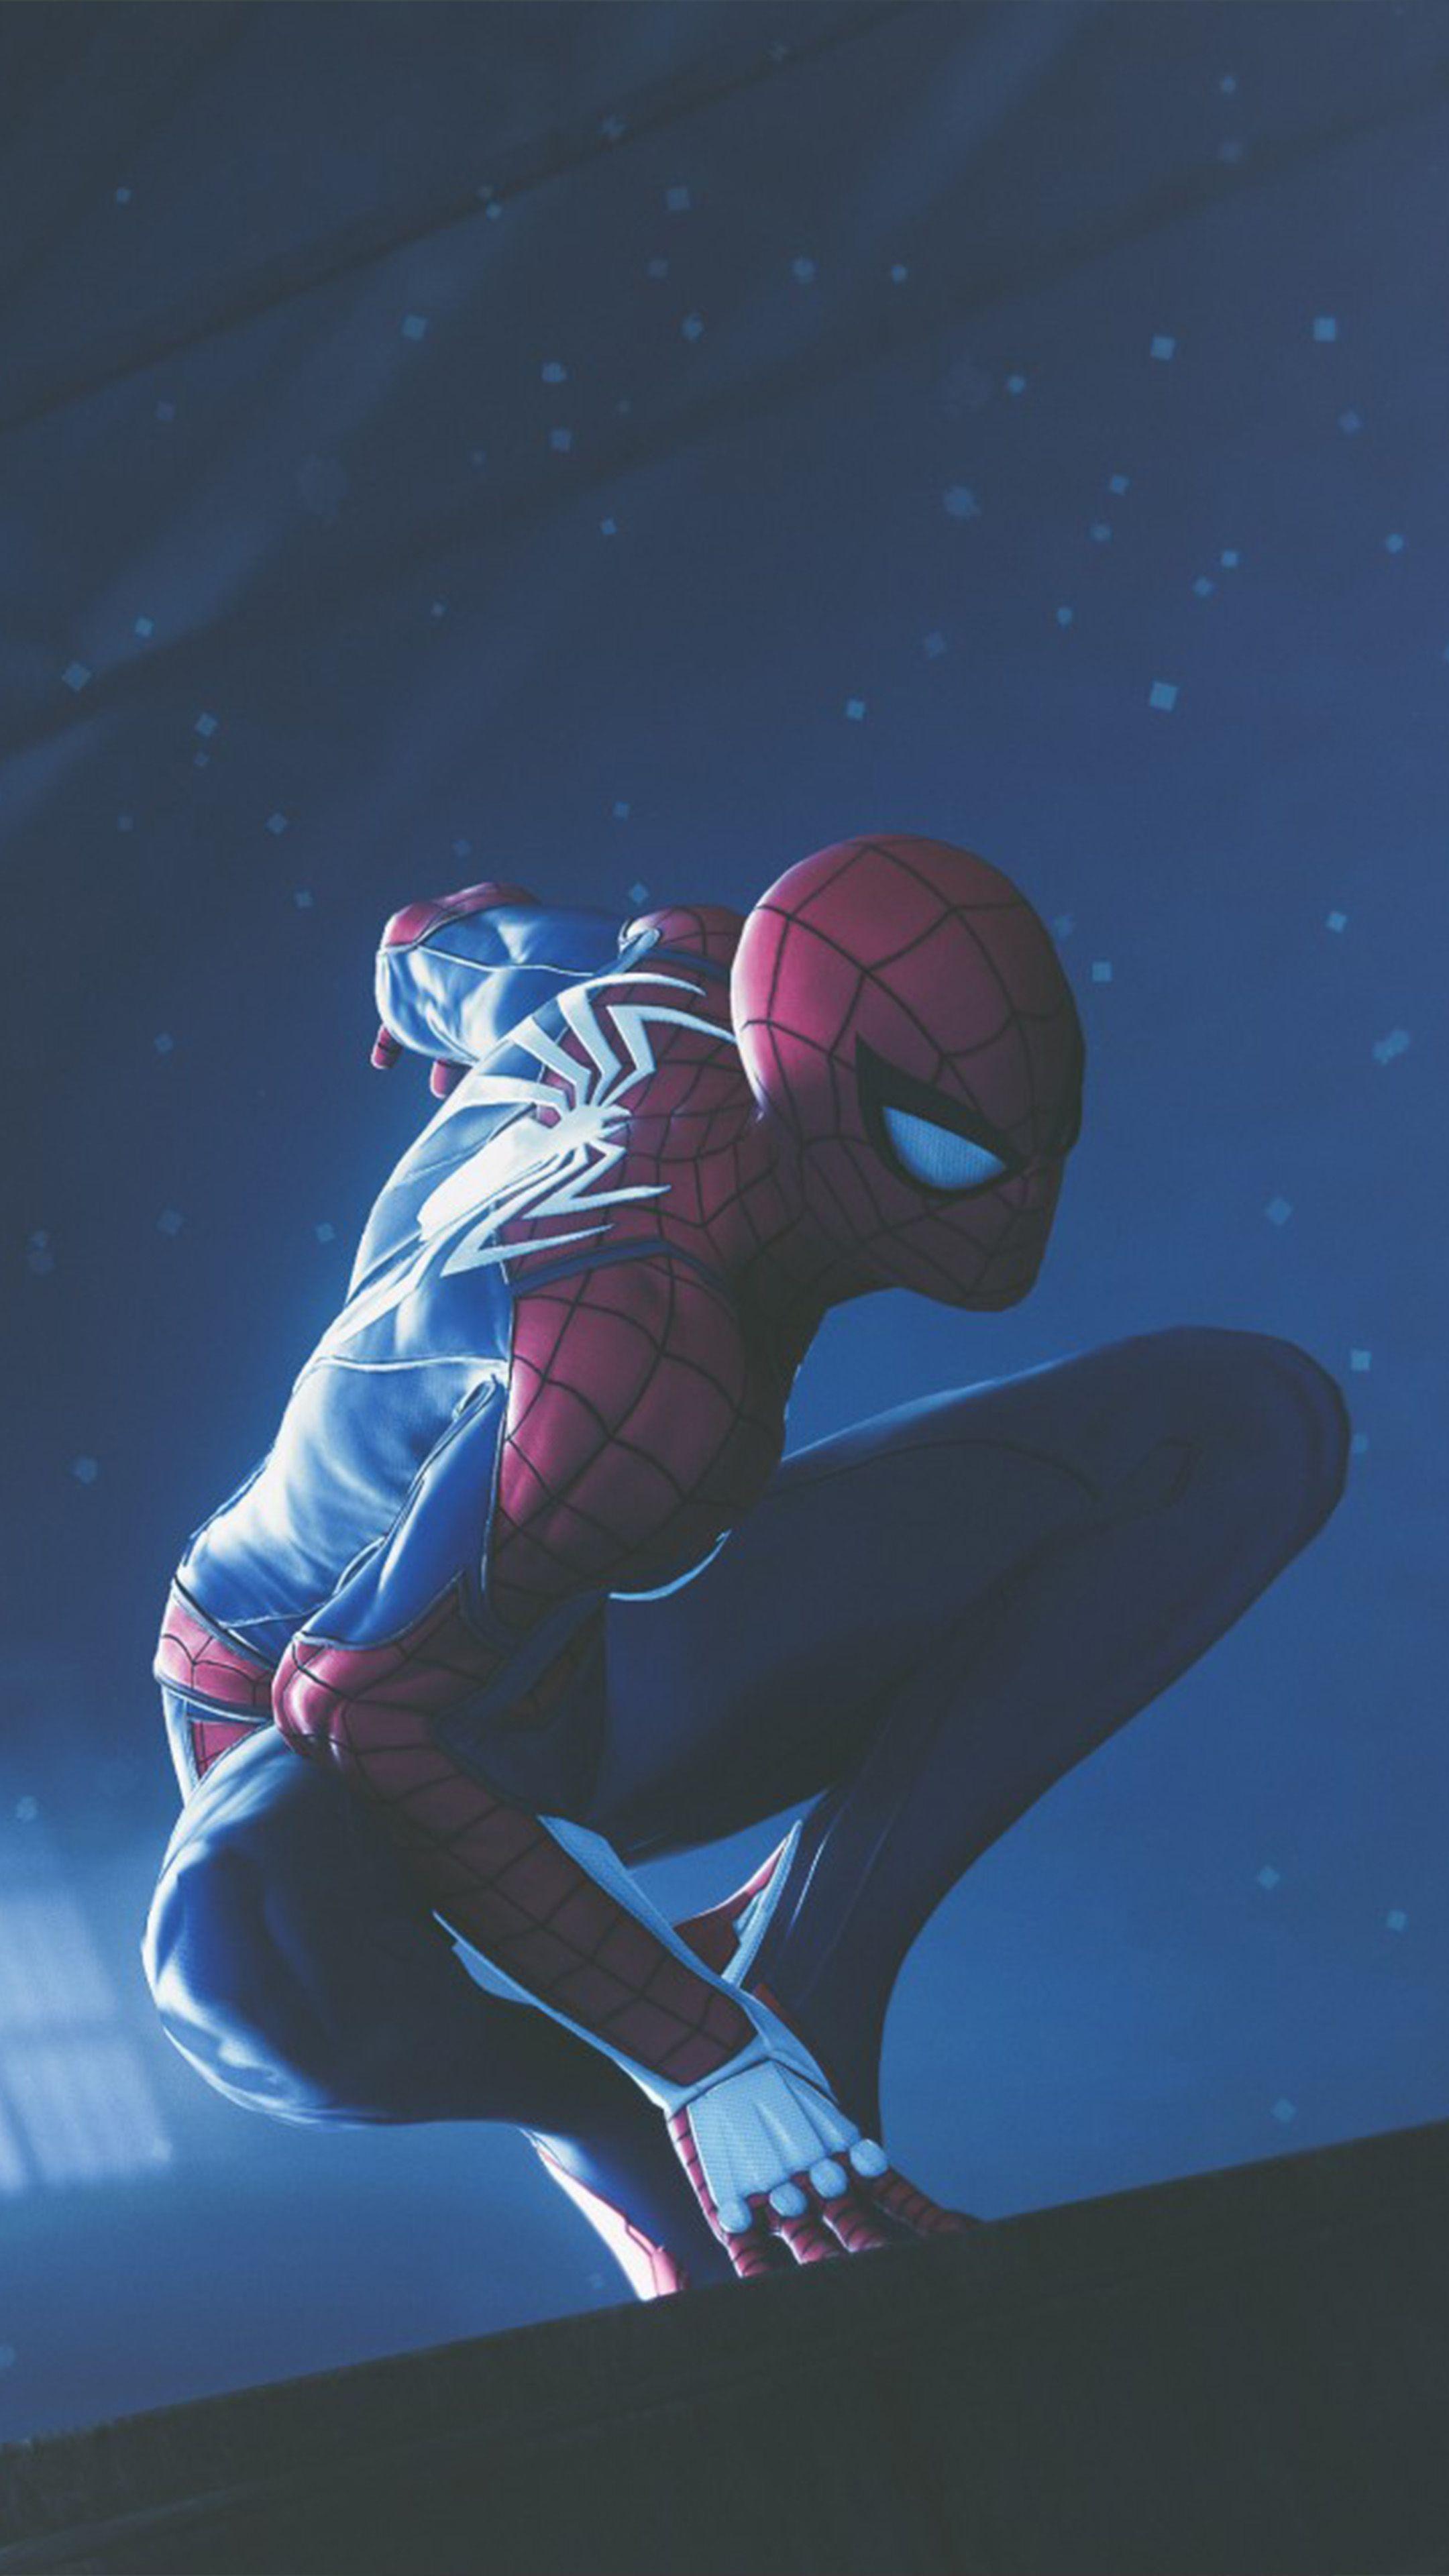 Featured image of post Hd Fondo Spiderman Ps4 Wallpaper Taustakuvaksi voi asettaa mink tahansa valokuvan tai ladatun kuvan